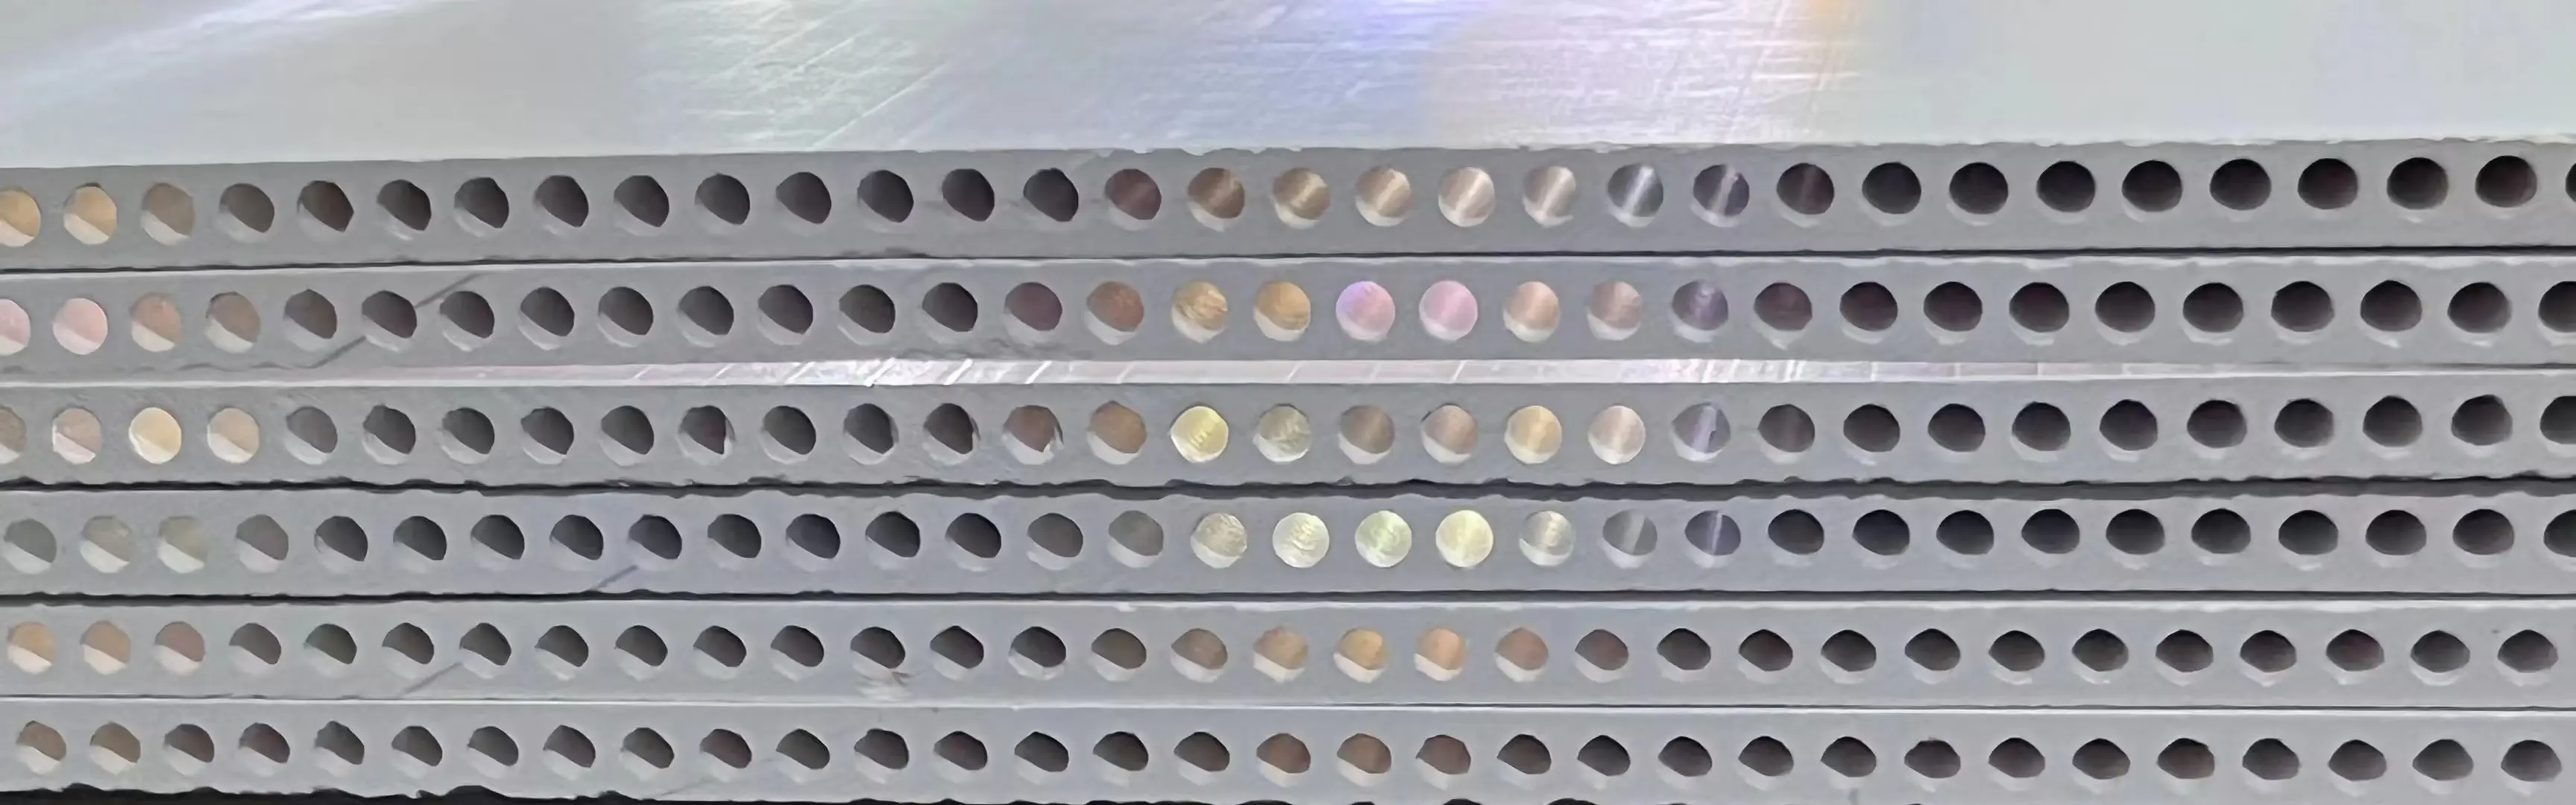 Ceramic Ultrafiltration Membrane Filters White Water Treatment Rectangle Aluminium Trioxide Membrane Bioreactor for Farms